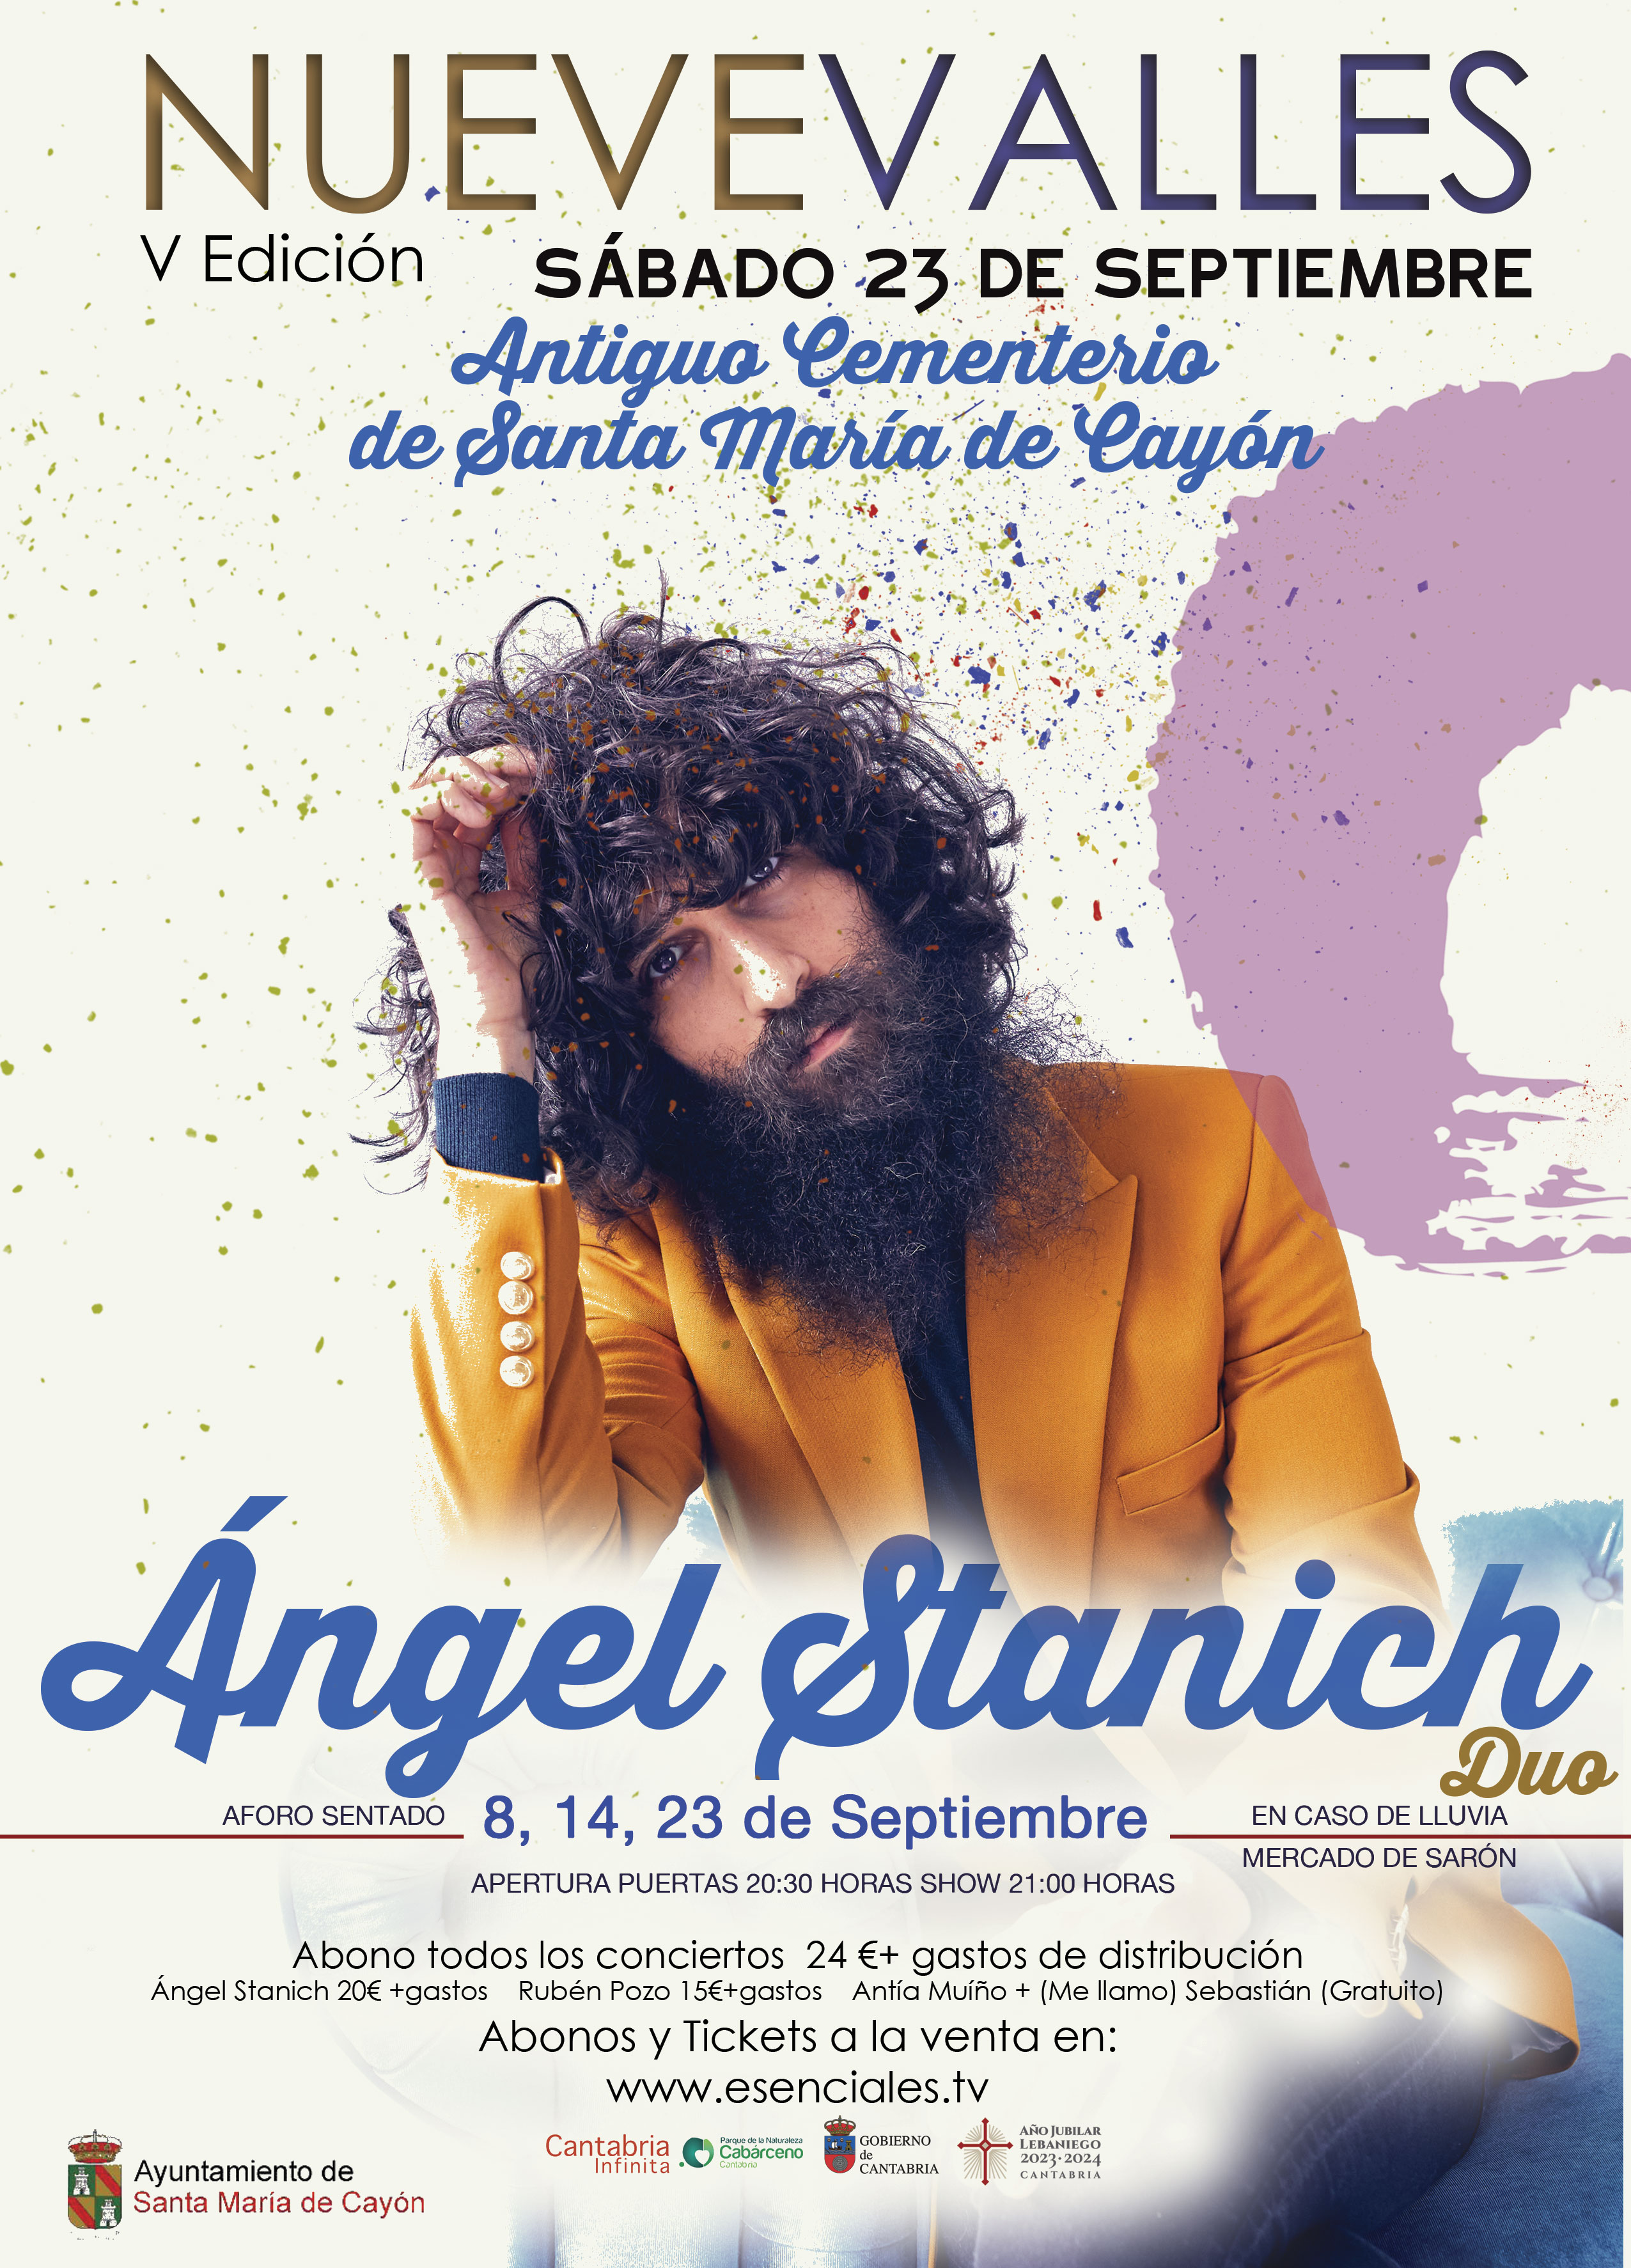 NUEVE VALLES presenta a Angel Stanich (dúo) - Cantabria  - Mutick